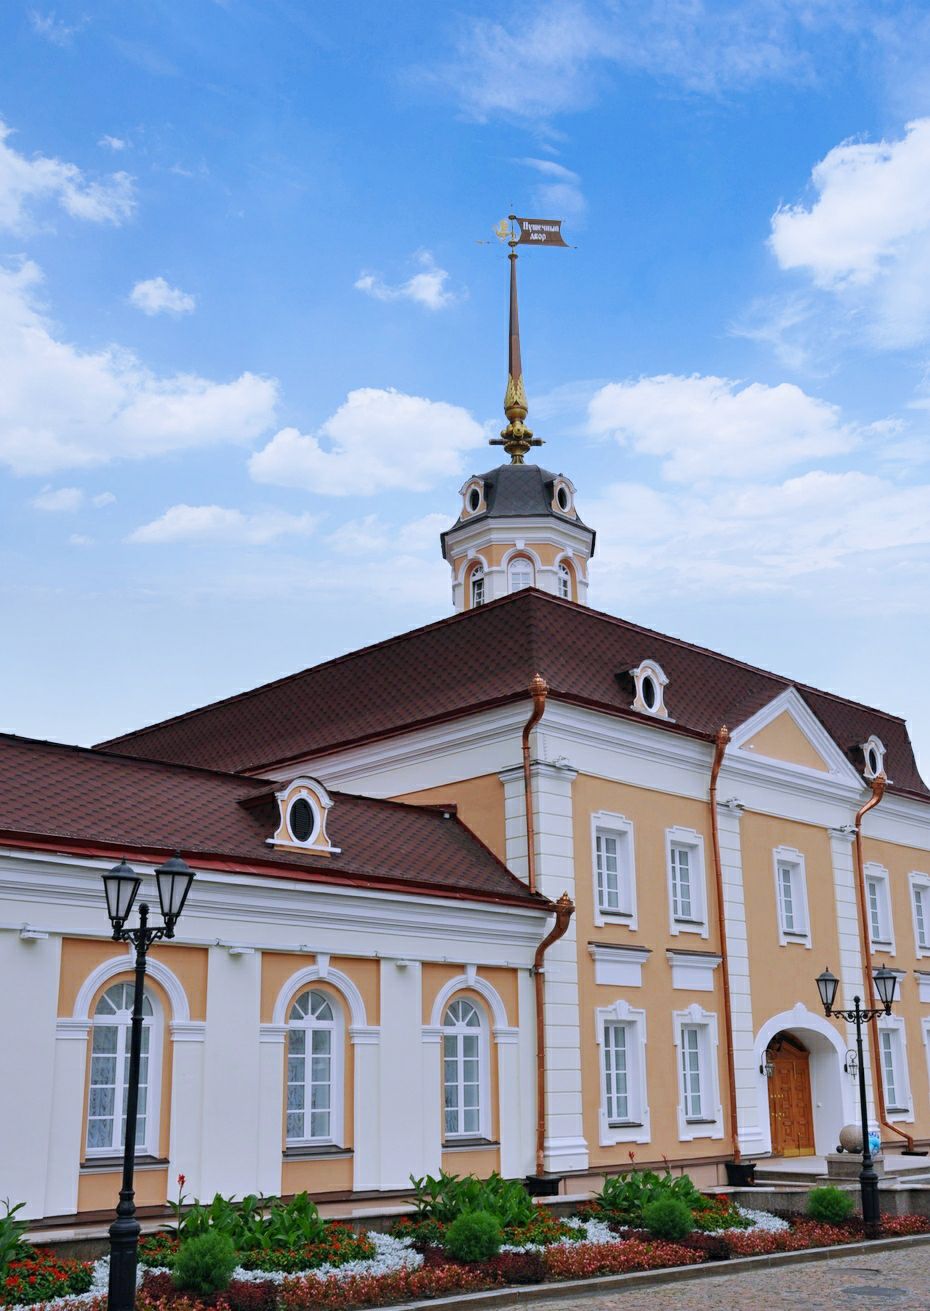 喀山克里姆林宫在俄罗斯是独树一帜的建筑丰碑,座落在风光旖旎的